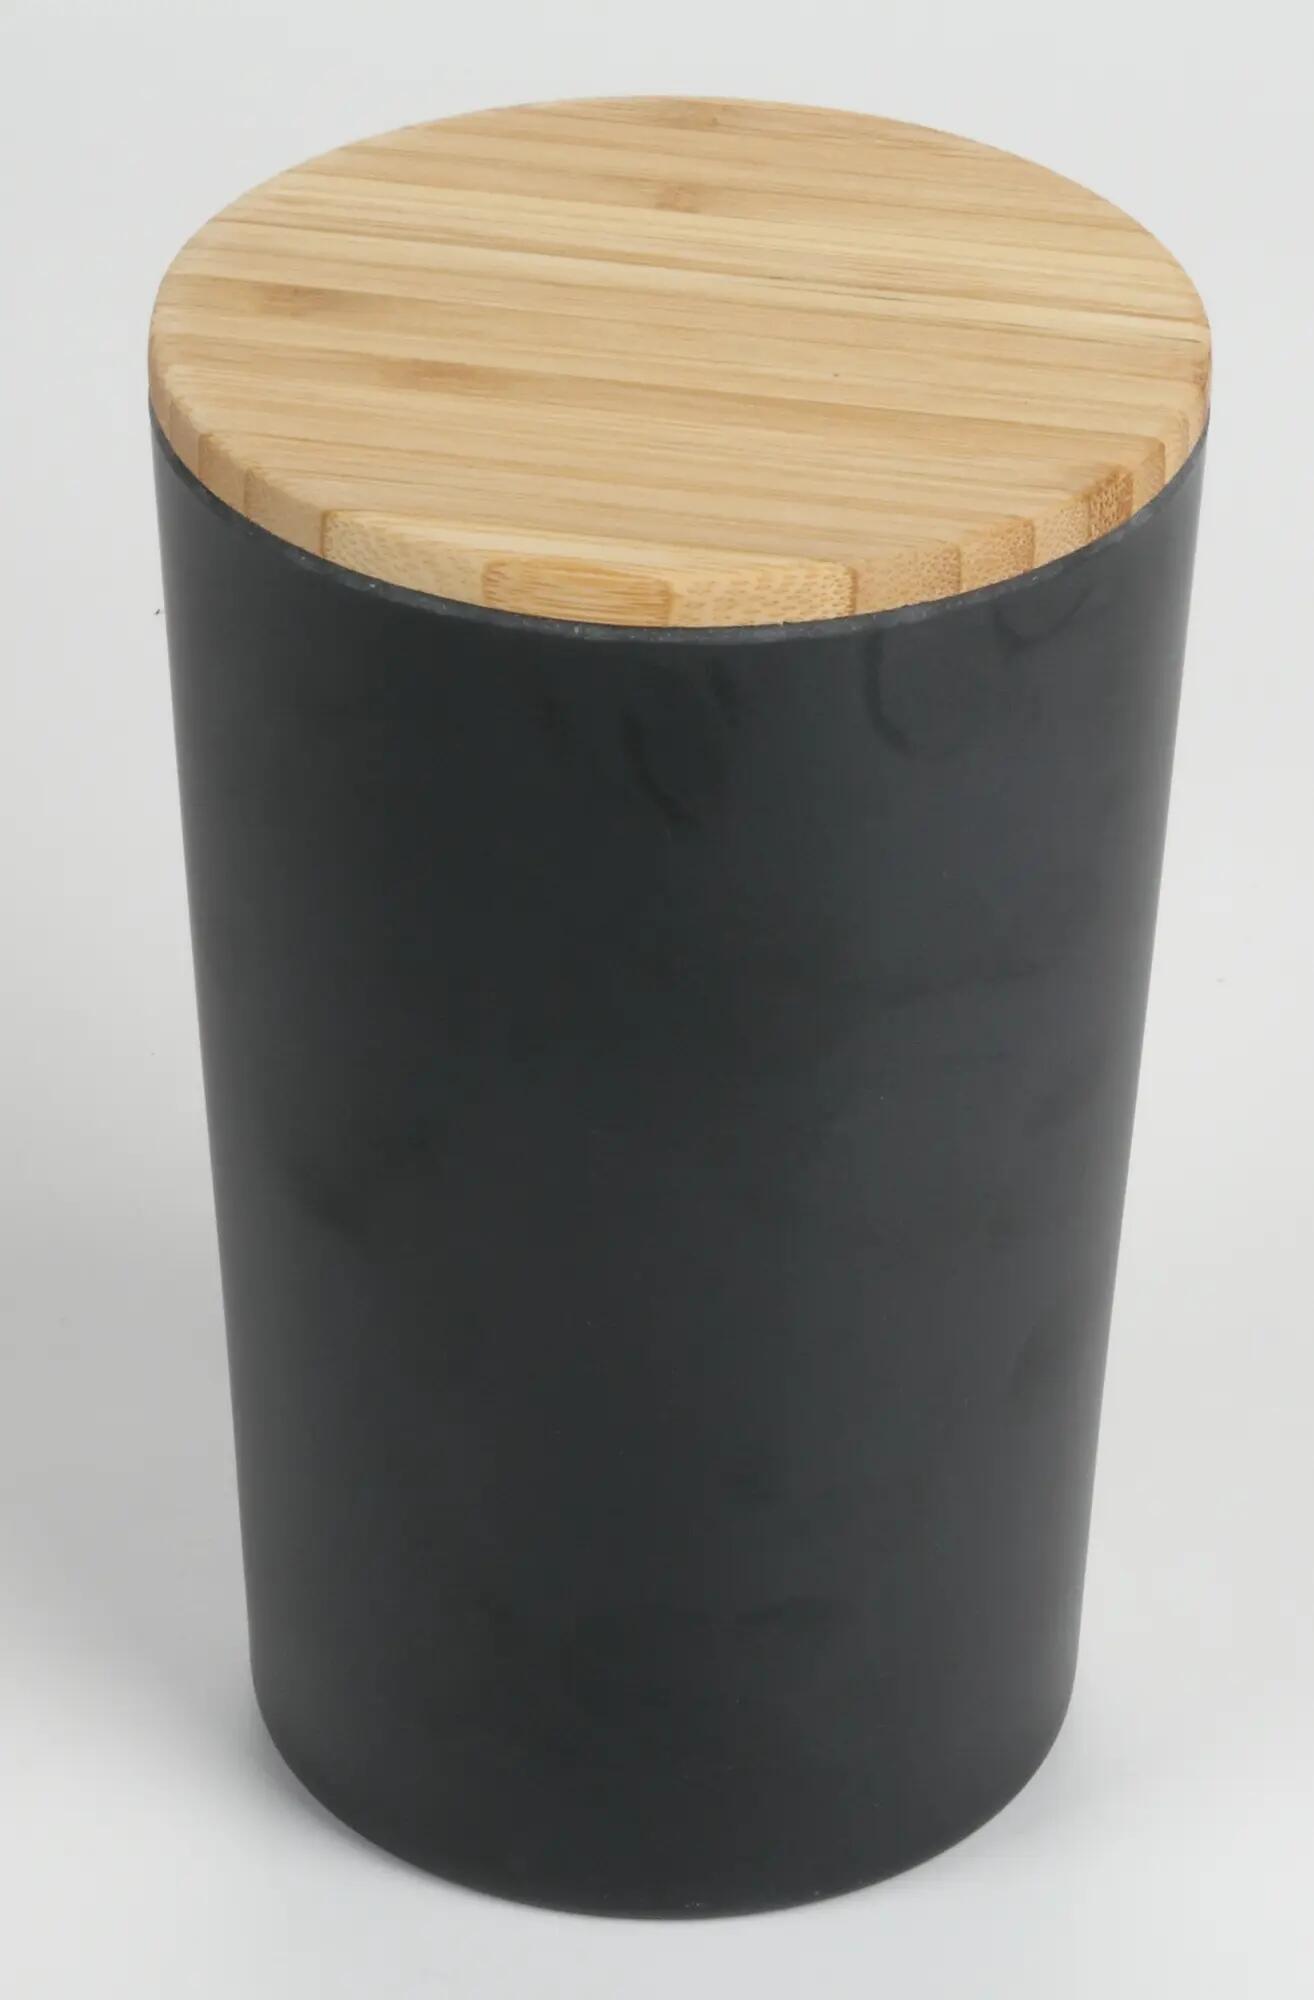 Contenitore da cucina in legno nero L 12 x P 12 x H 18.7 cm JOCCA - 3